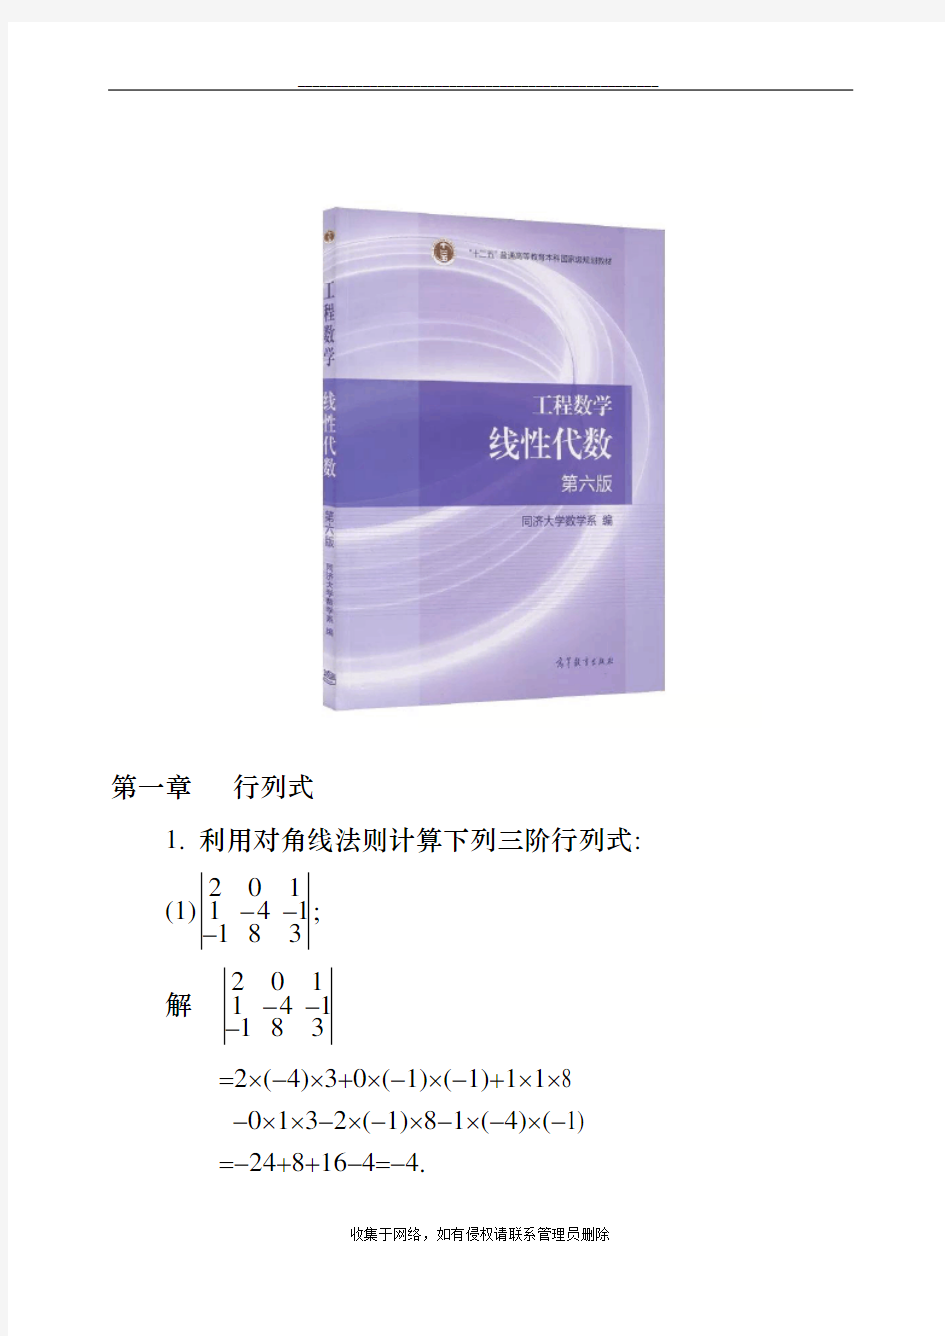 最新工程数学线性代数(同济大学第六版)课后习题答案(全)